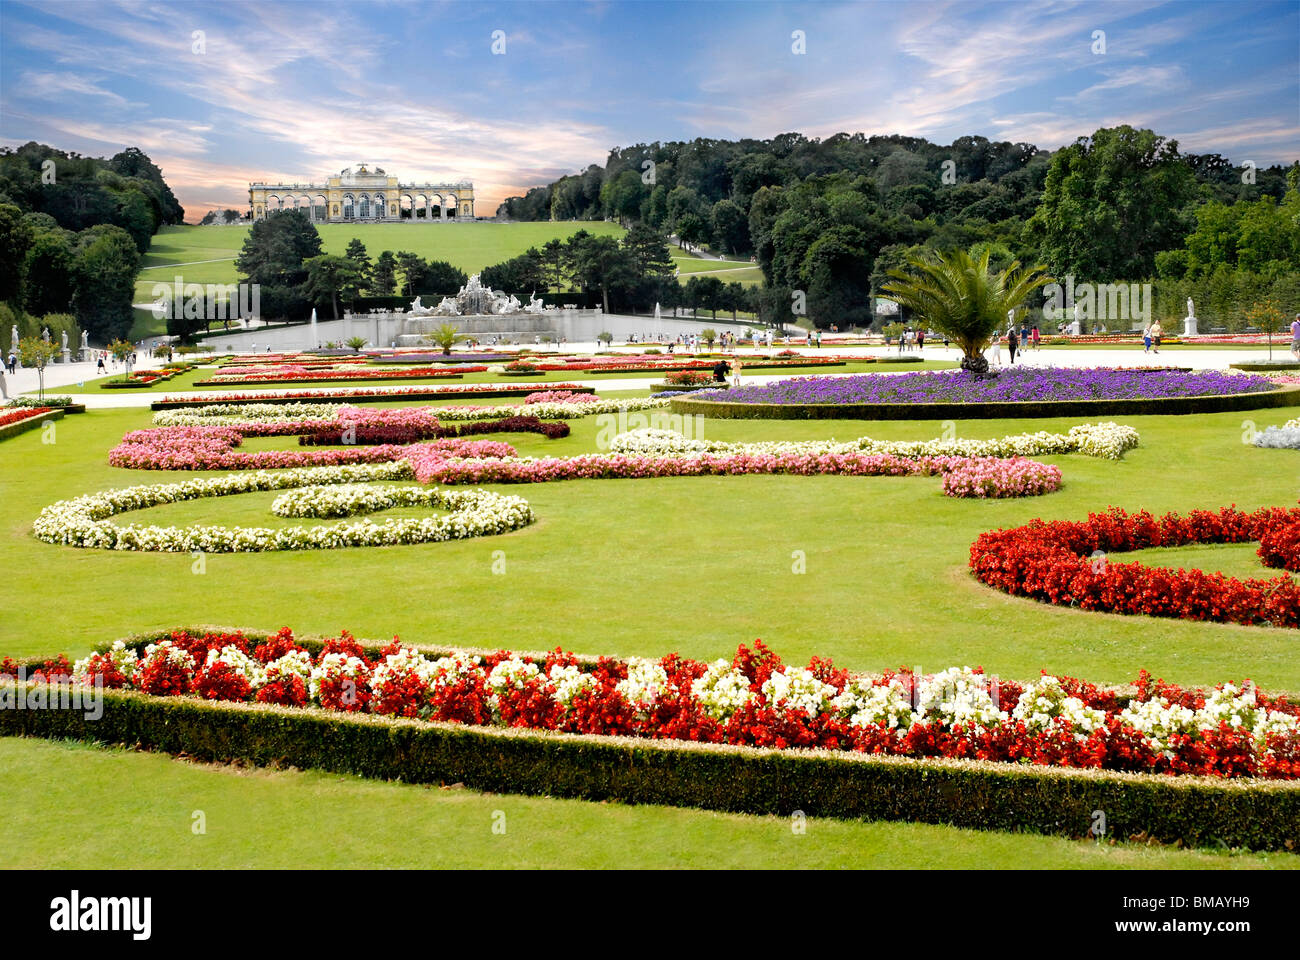 The Gloriette in the Schonbrunn Palace Garden, Vienna, Austria Stock Photo